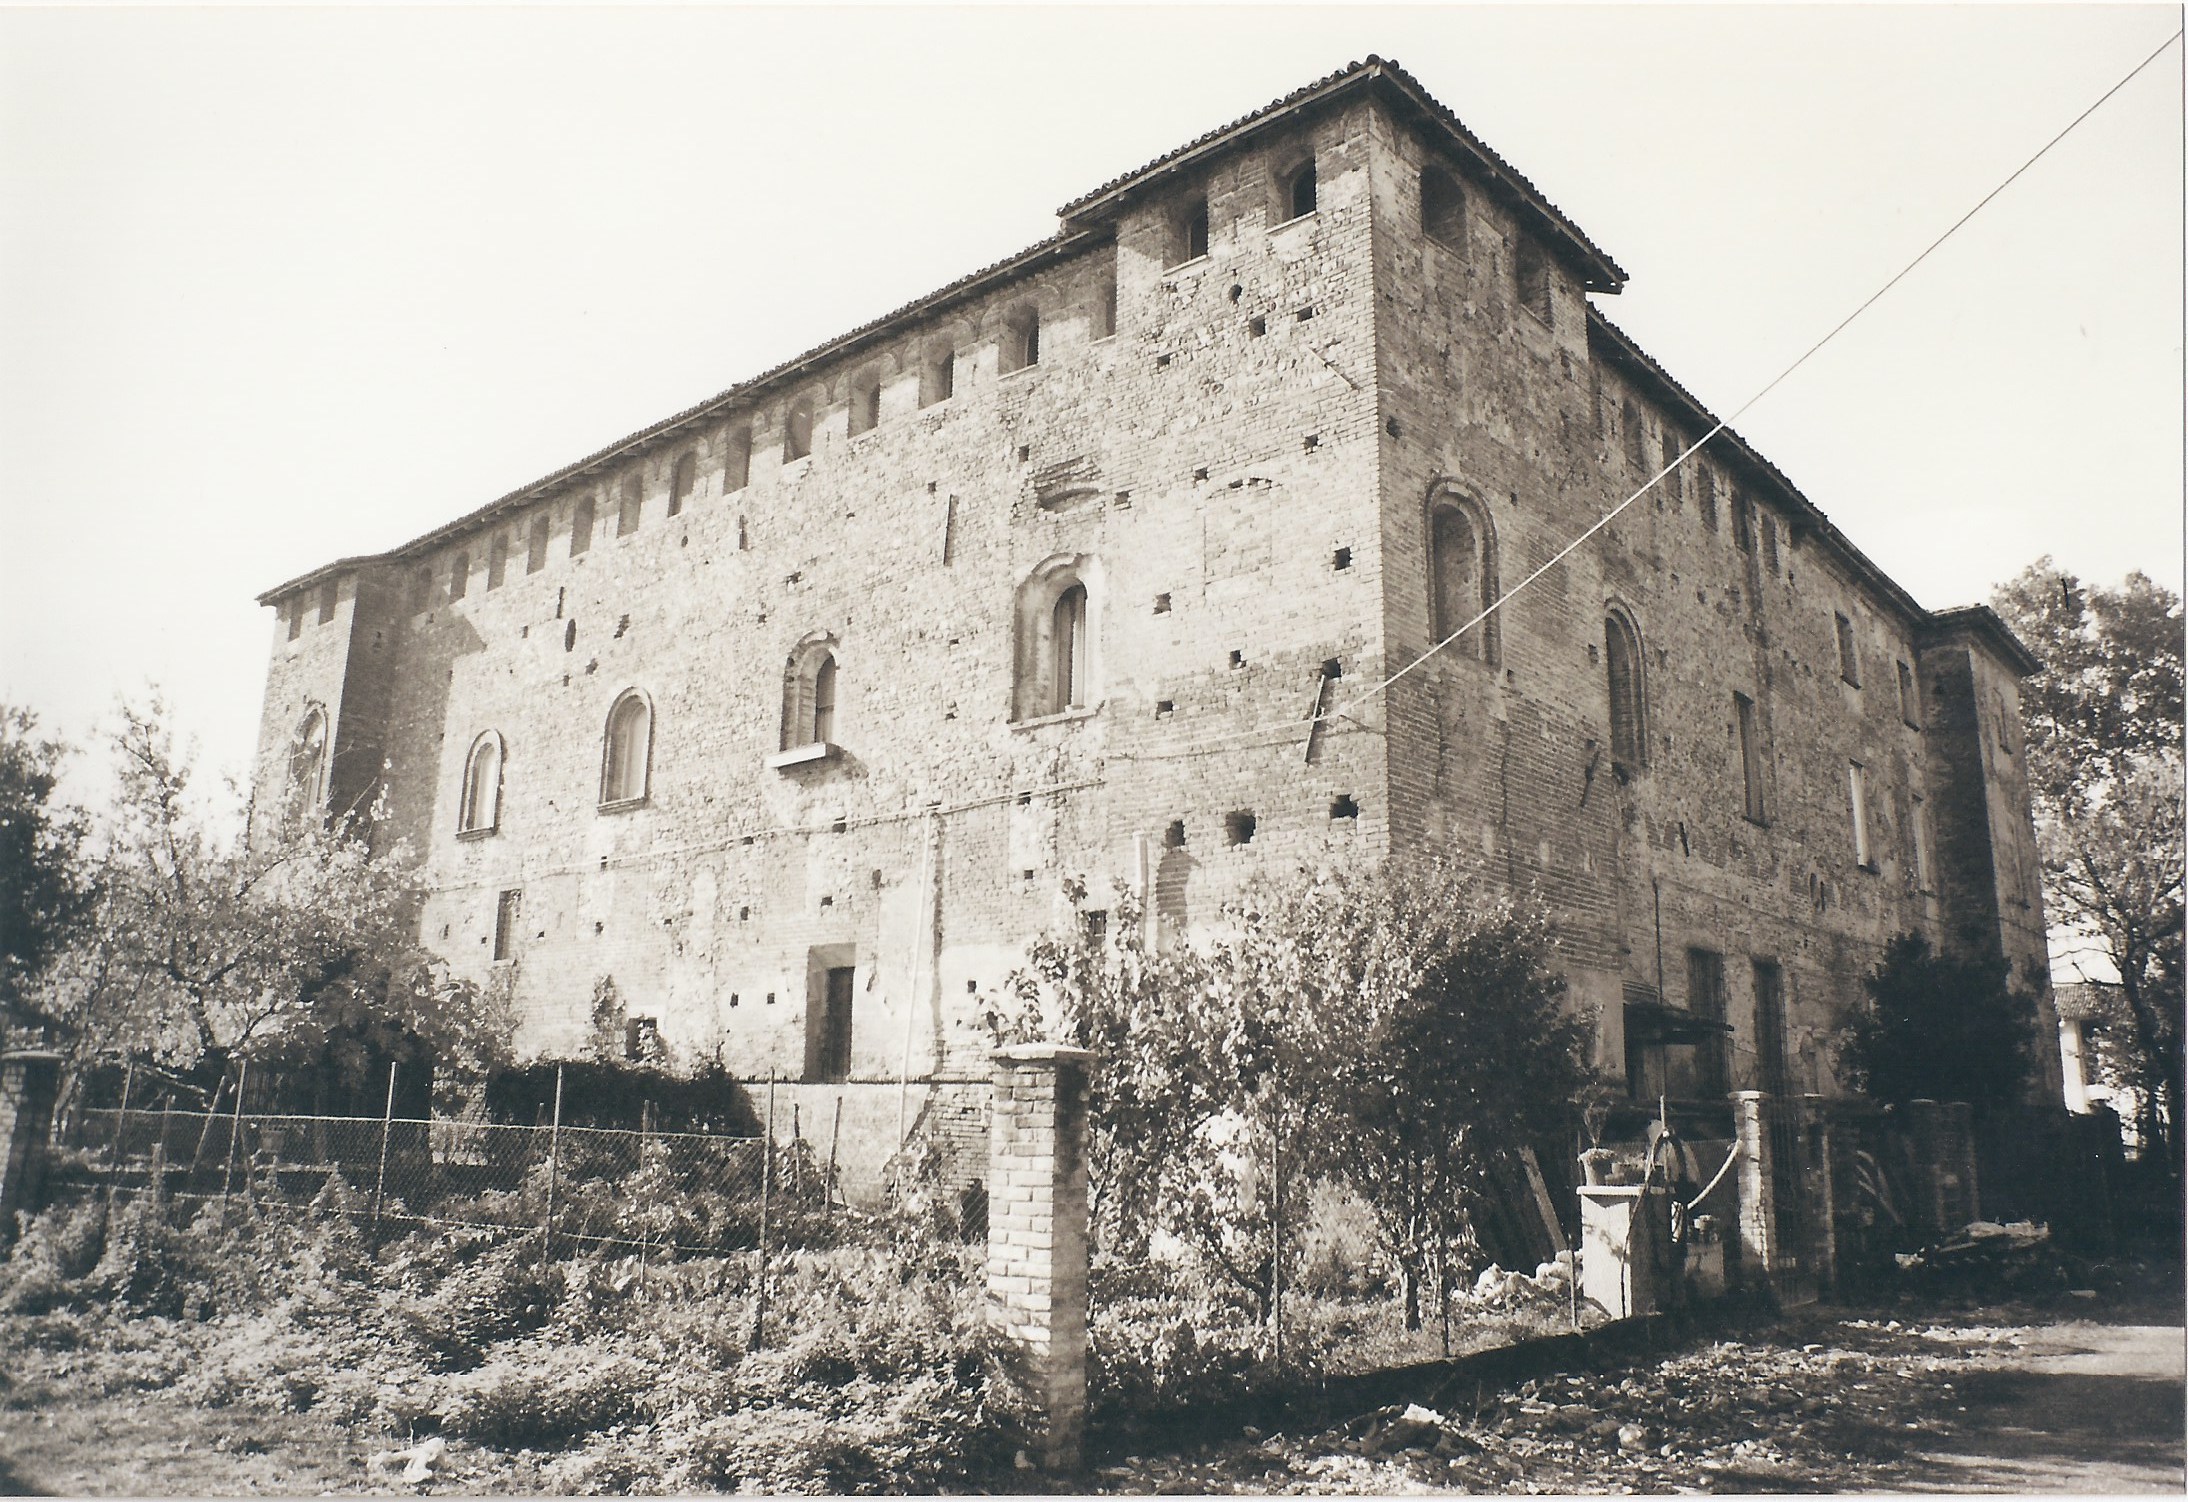 Castello di Baselica (castello, fortificato) - Gossolengo (PC)  (XV, inizio)